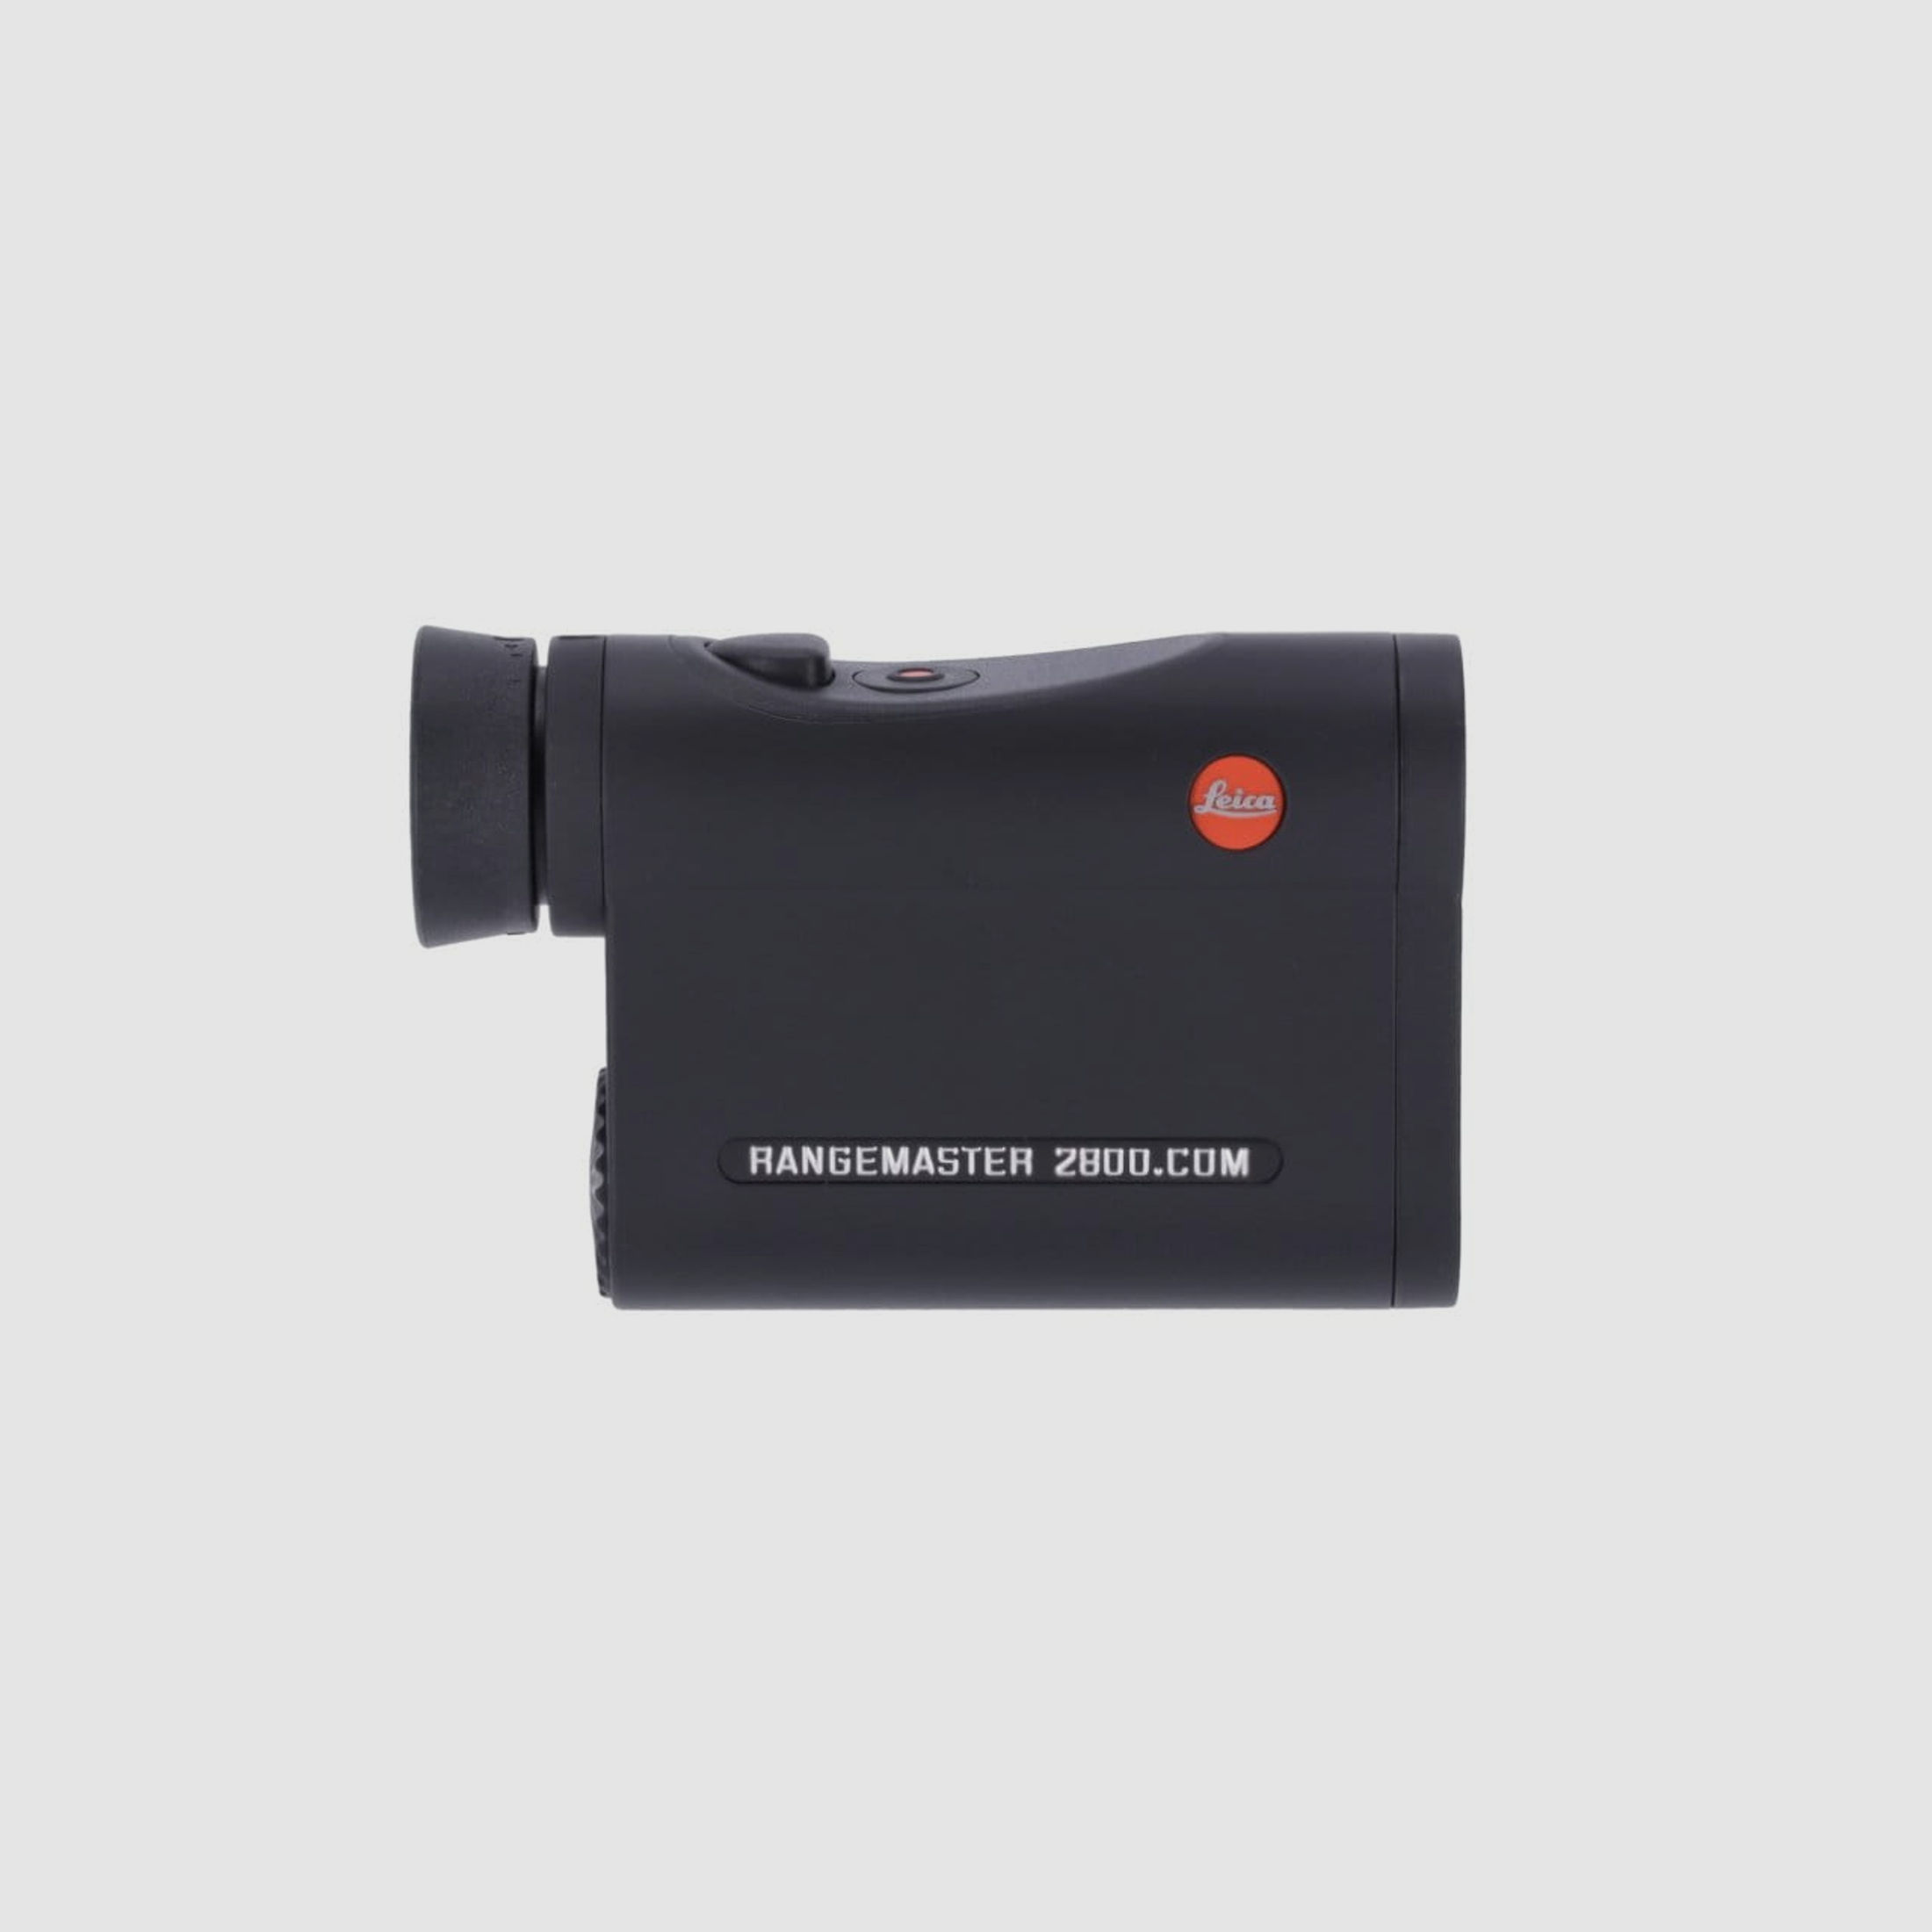 Leica Rangemaster CRF 2800.COM Entfernungsmesser